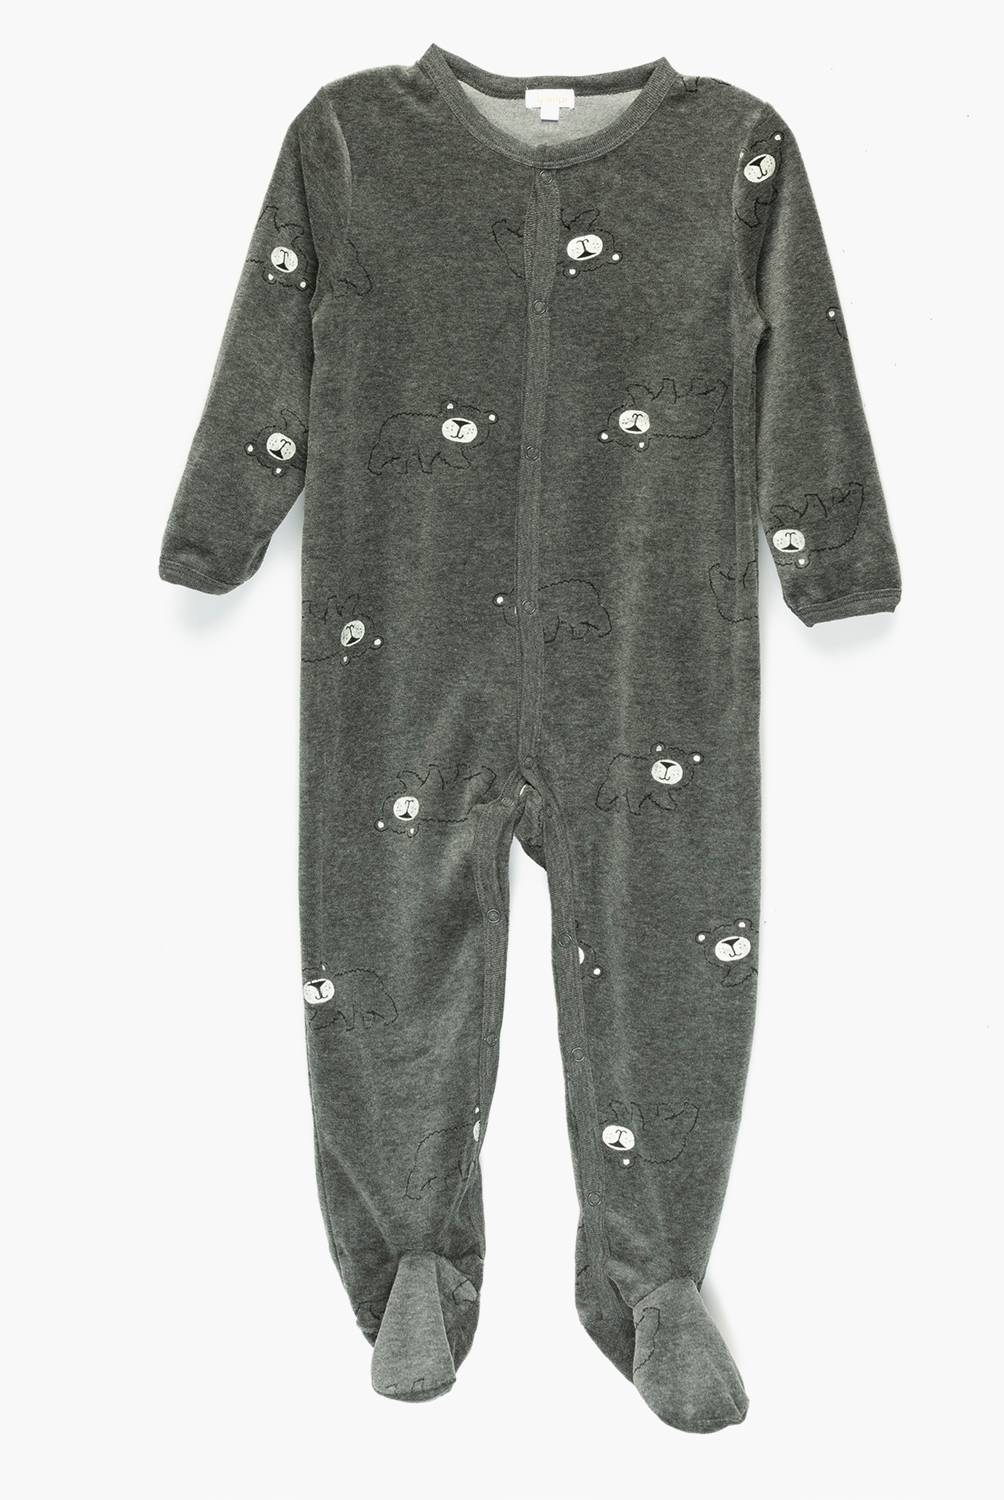 YAMP - Pijama Plush Bebé Niño